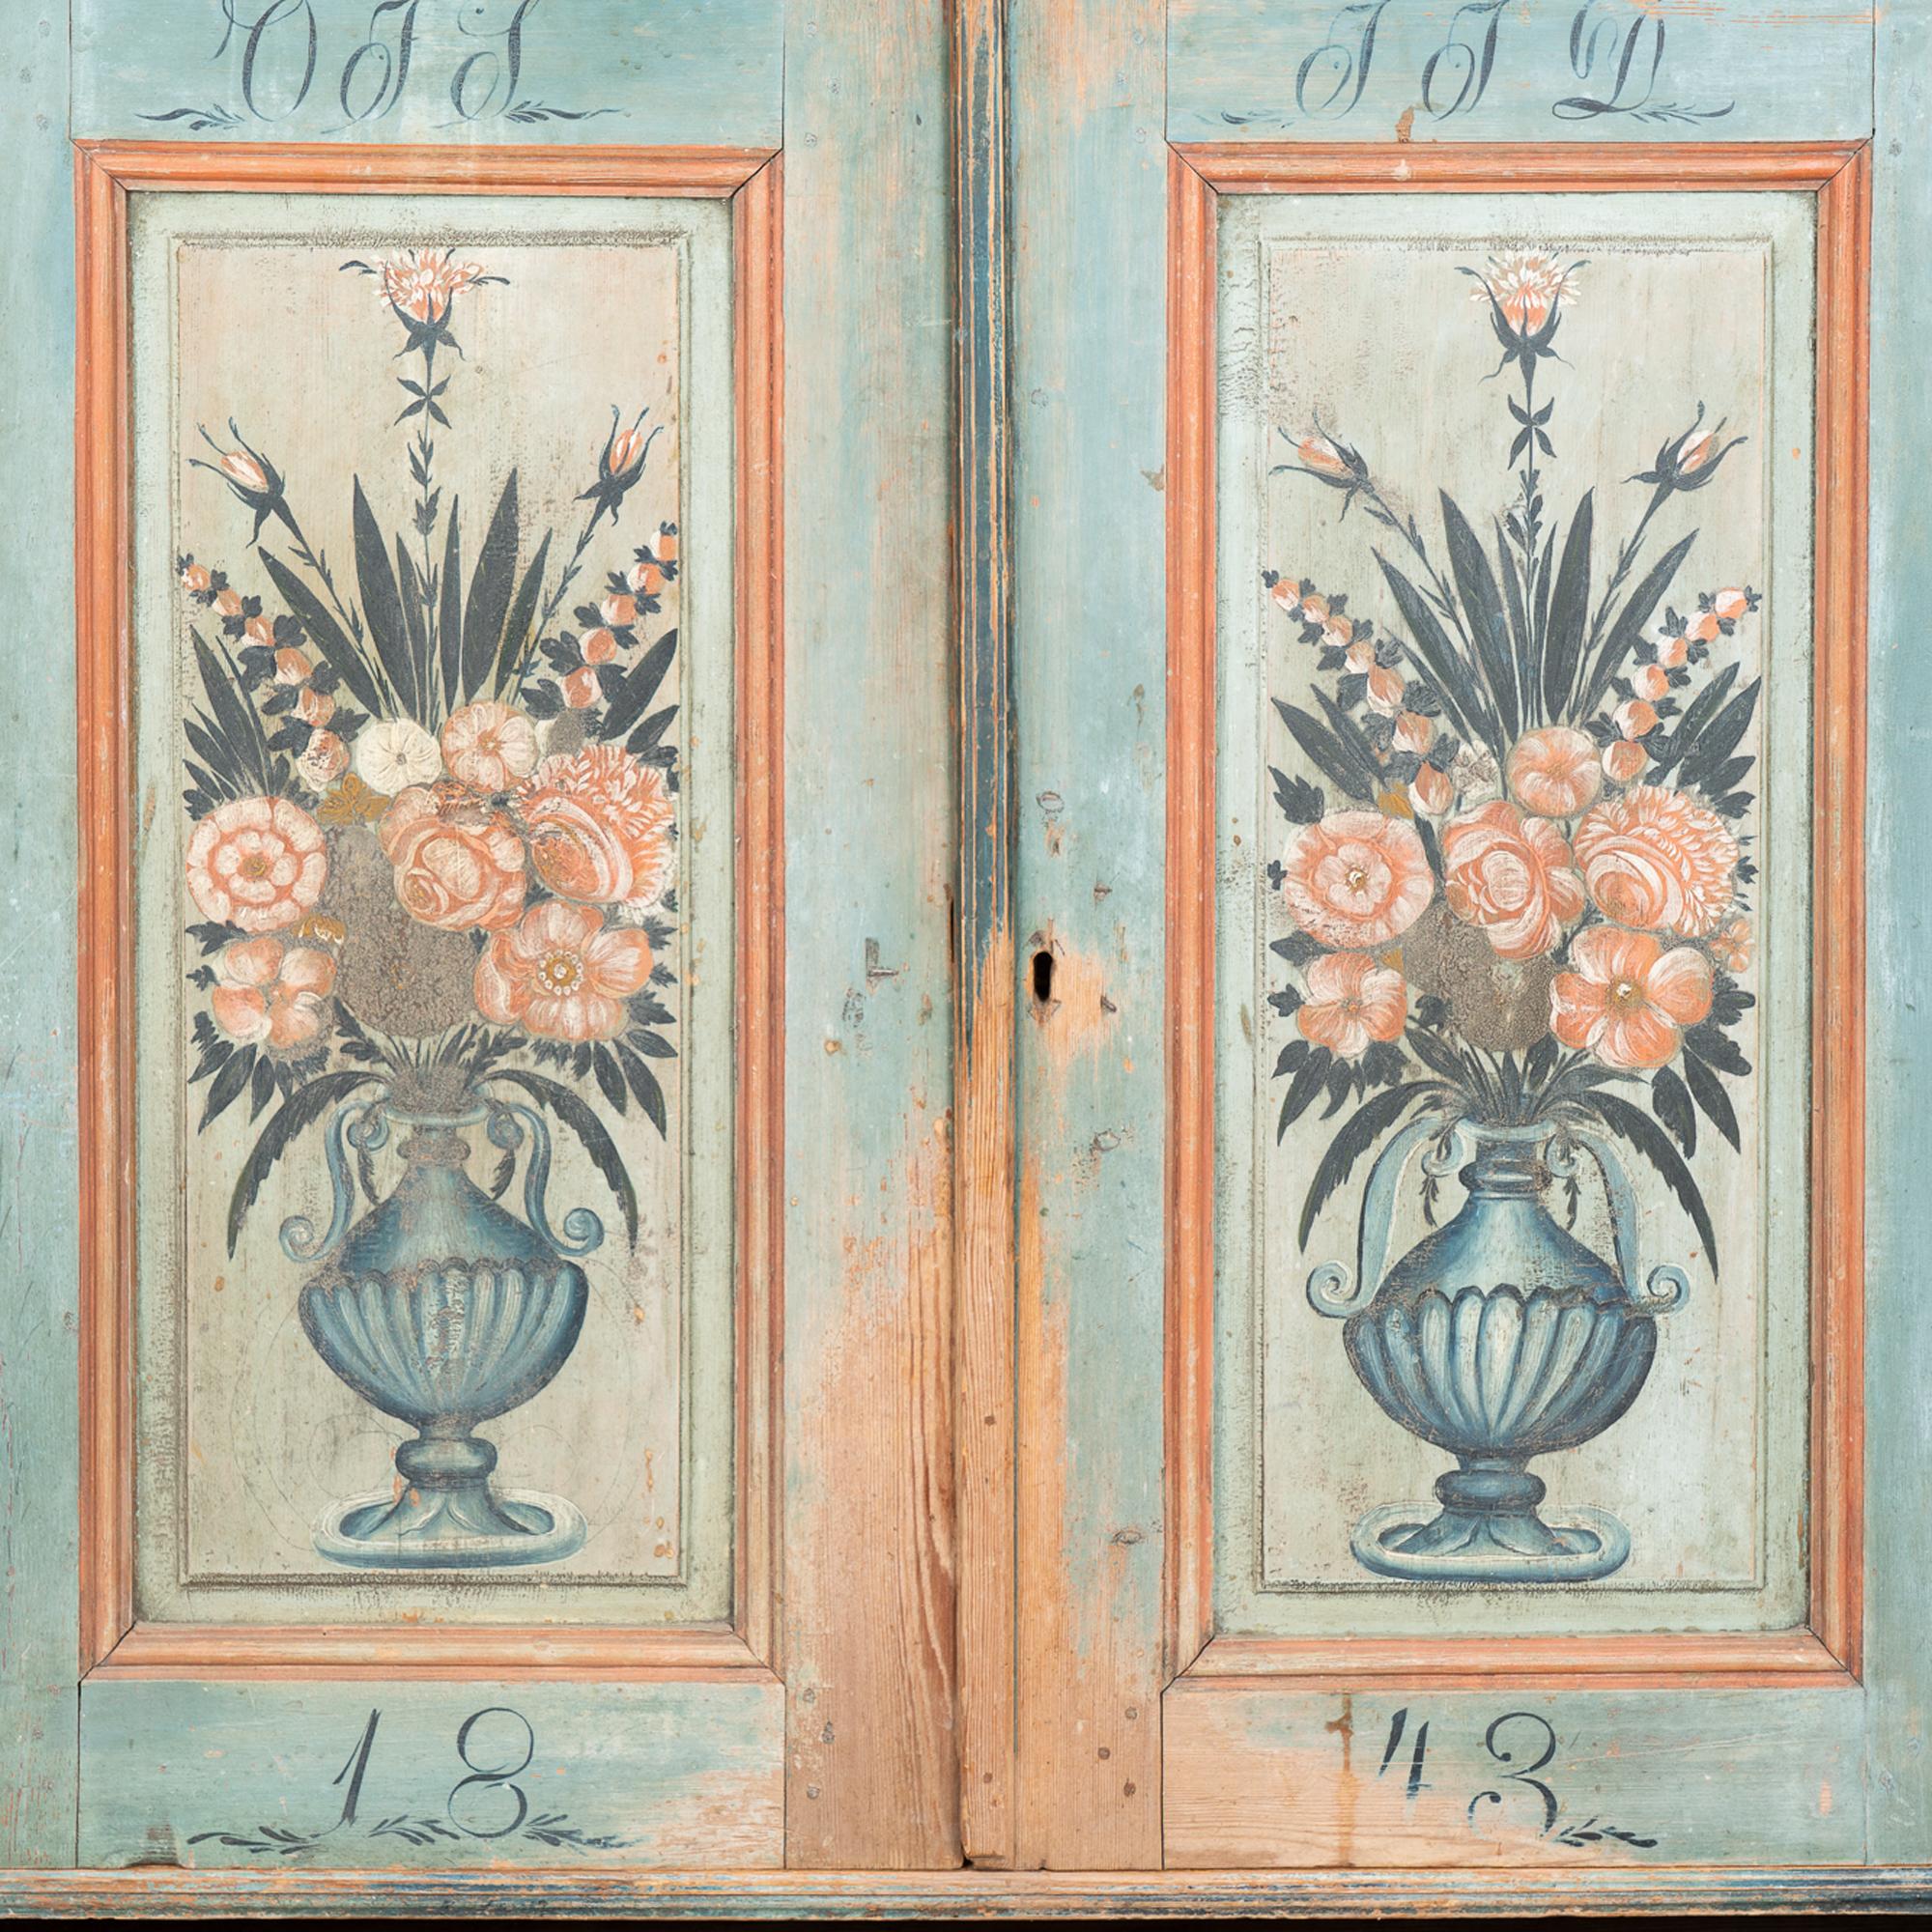 Folk Art Original Blue Painted Sideboard Cabinet, Sweden dated 1843 For Sale